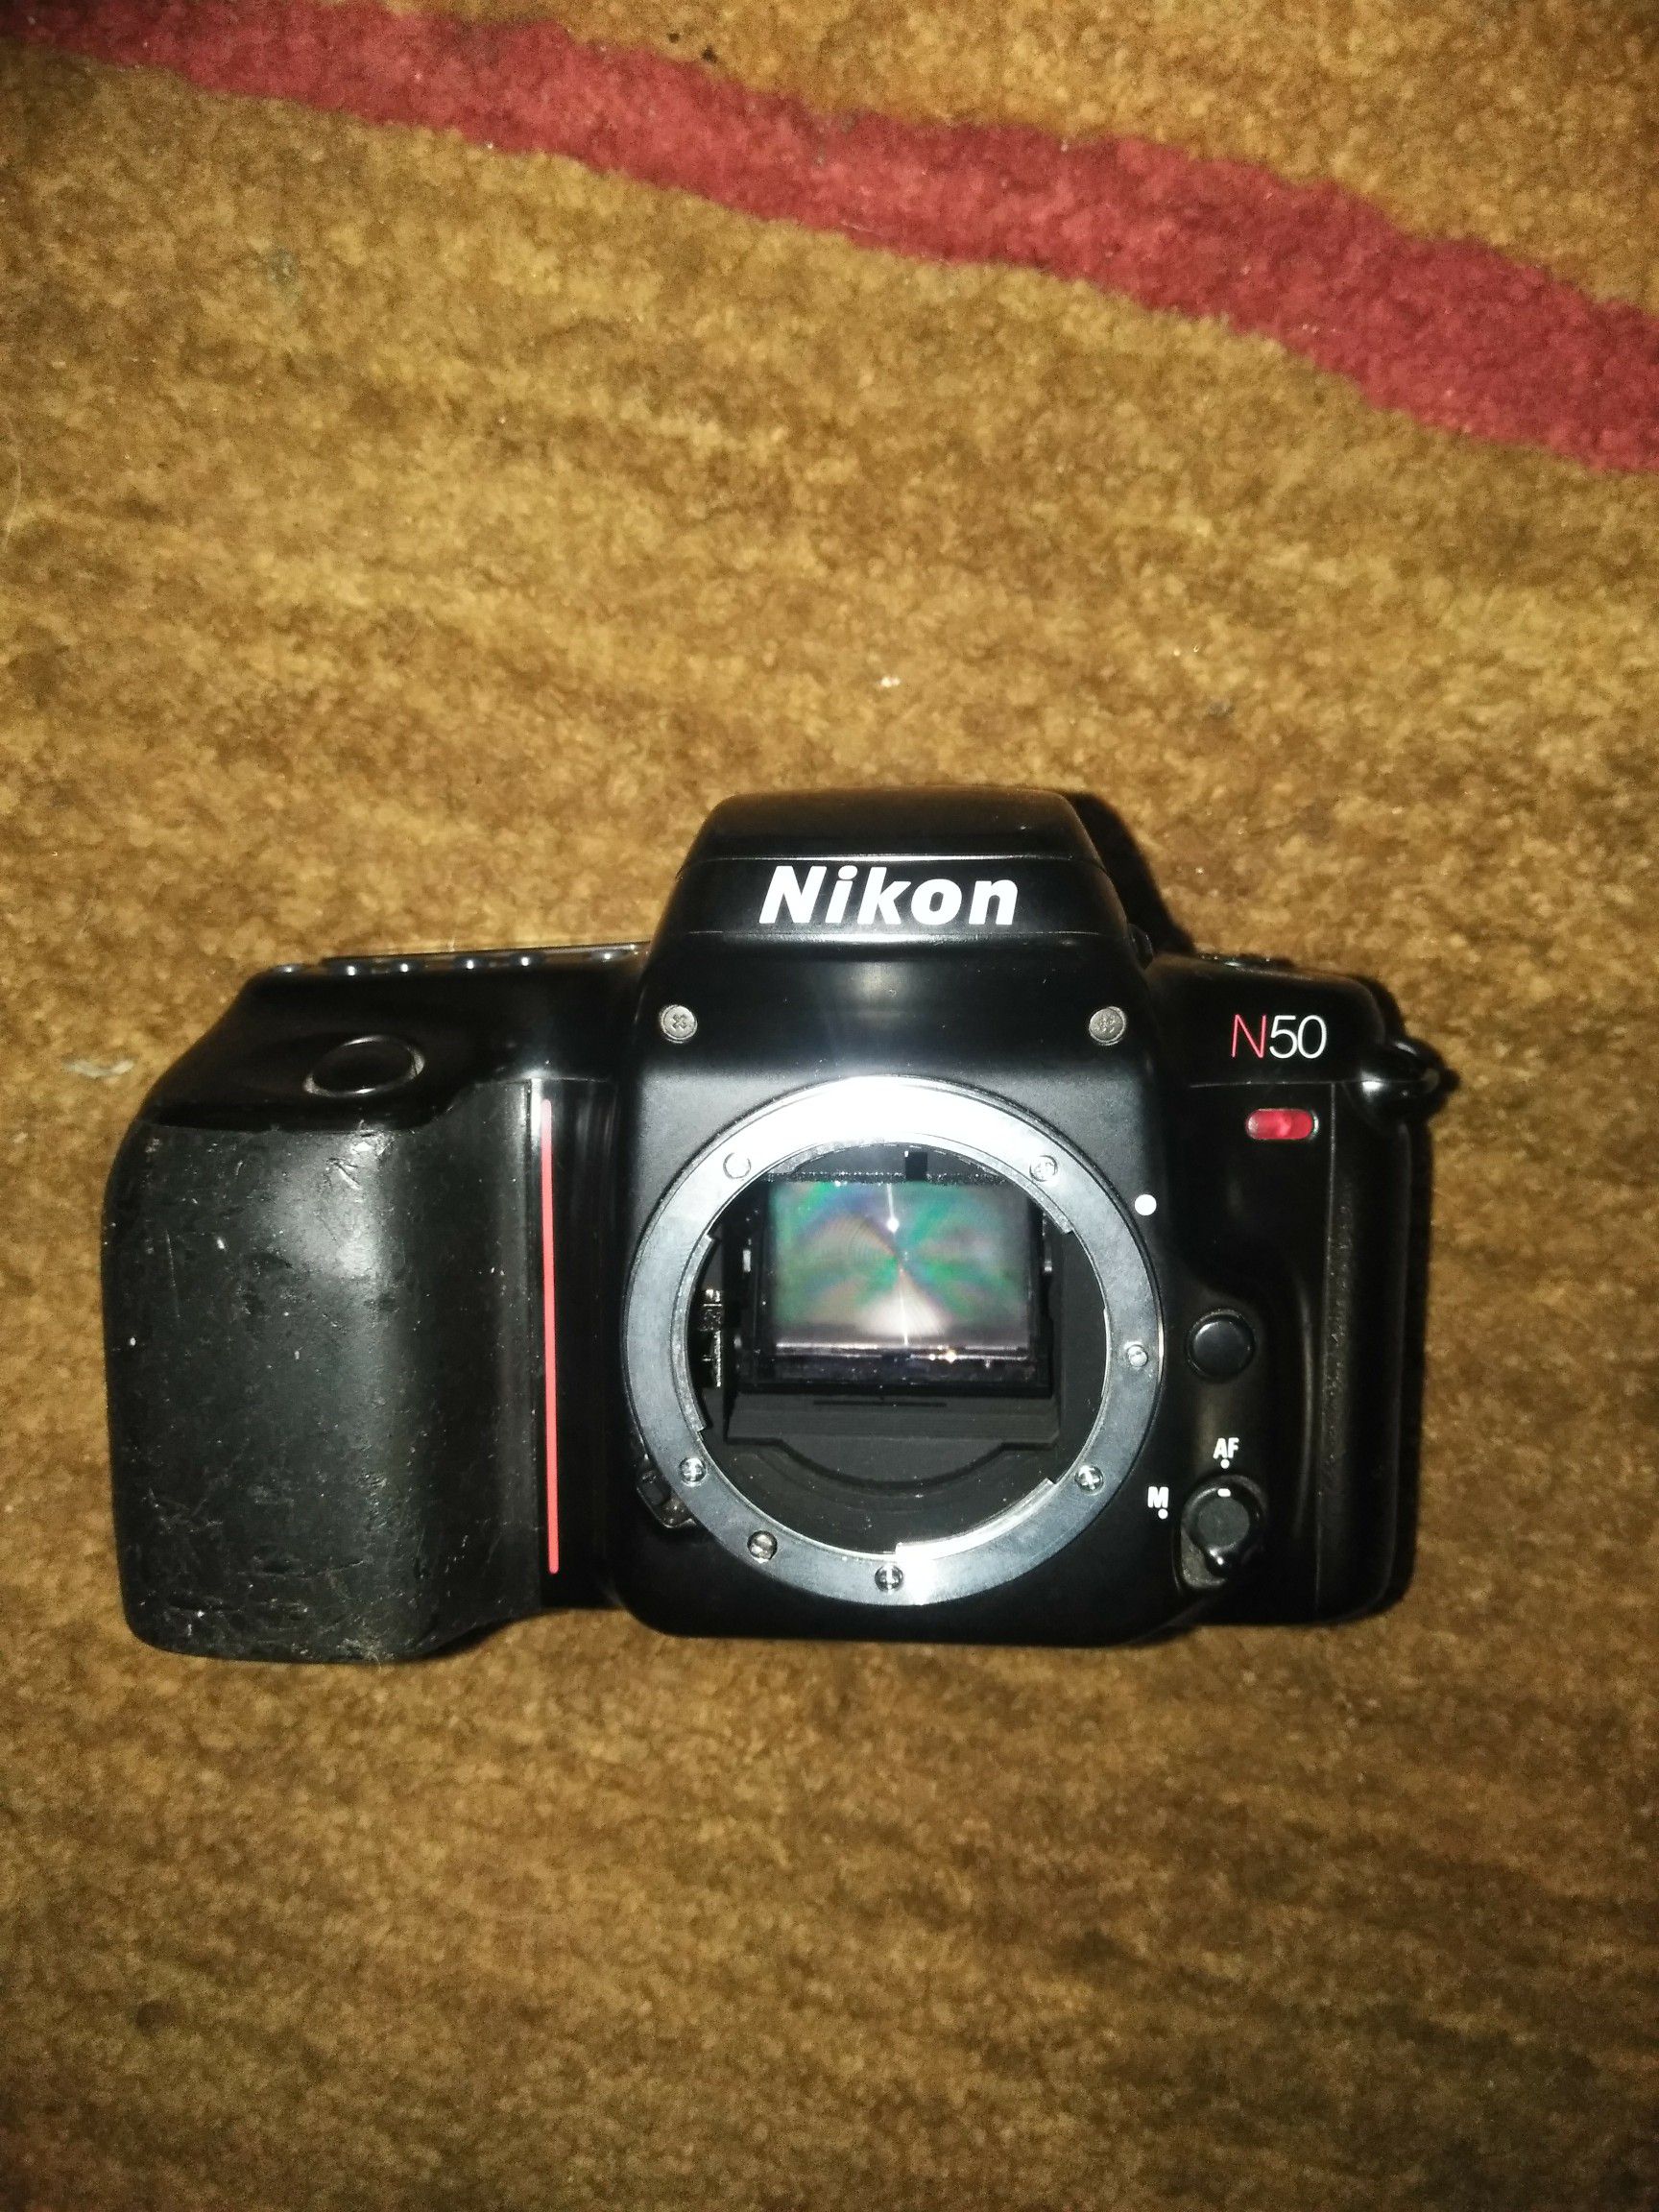 Nikon n50 camera no lense.